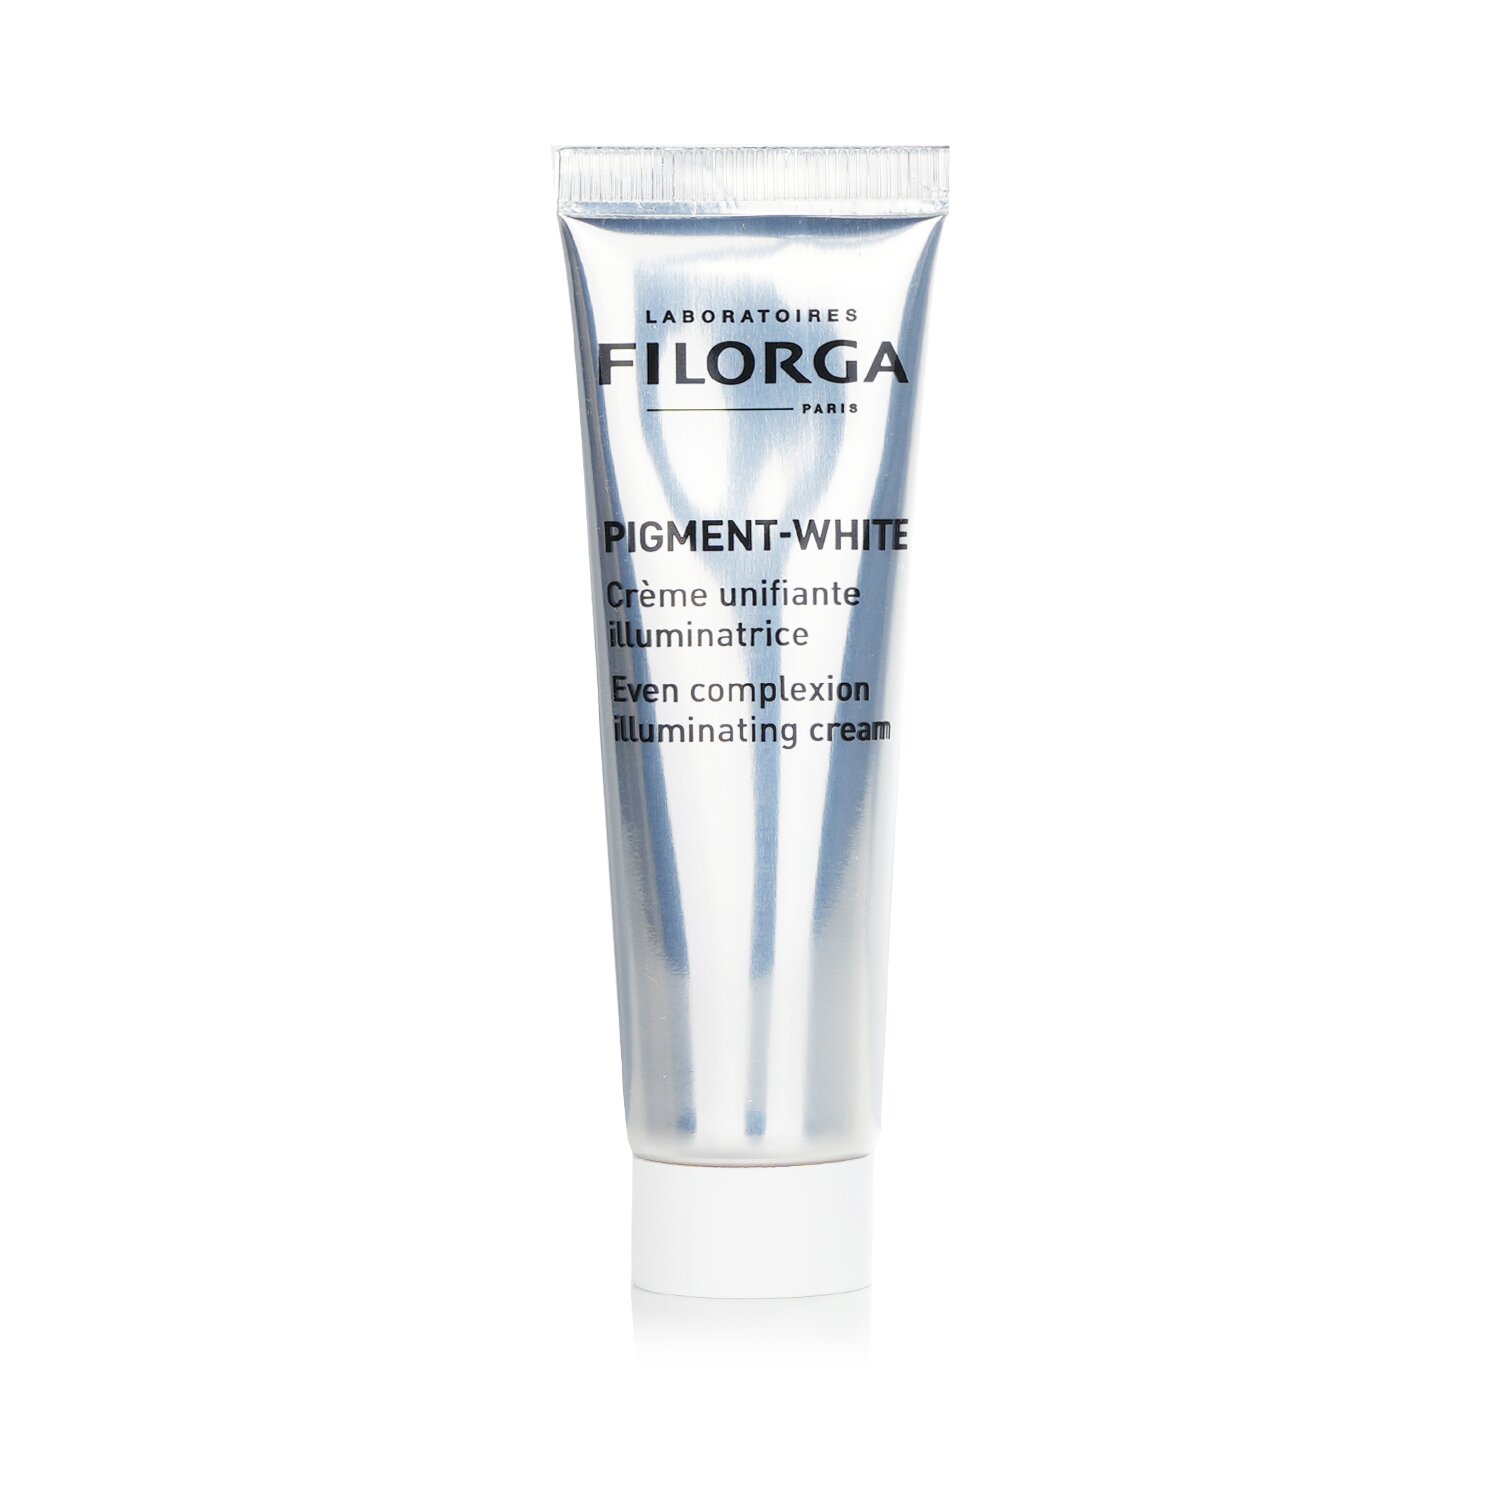 Filorga Pigment-White Even Complexion Illuminating Cream 30ml/1oz